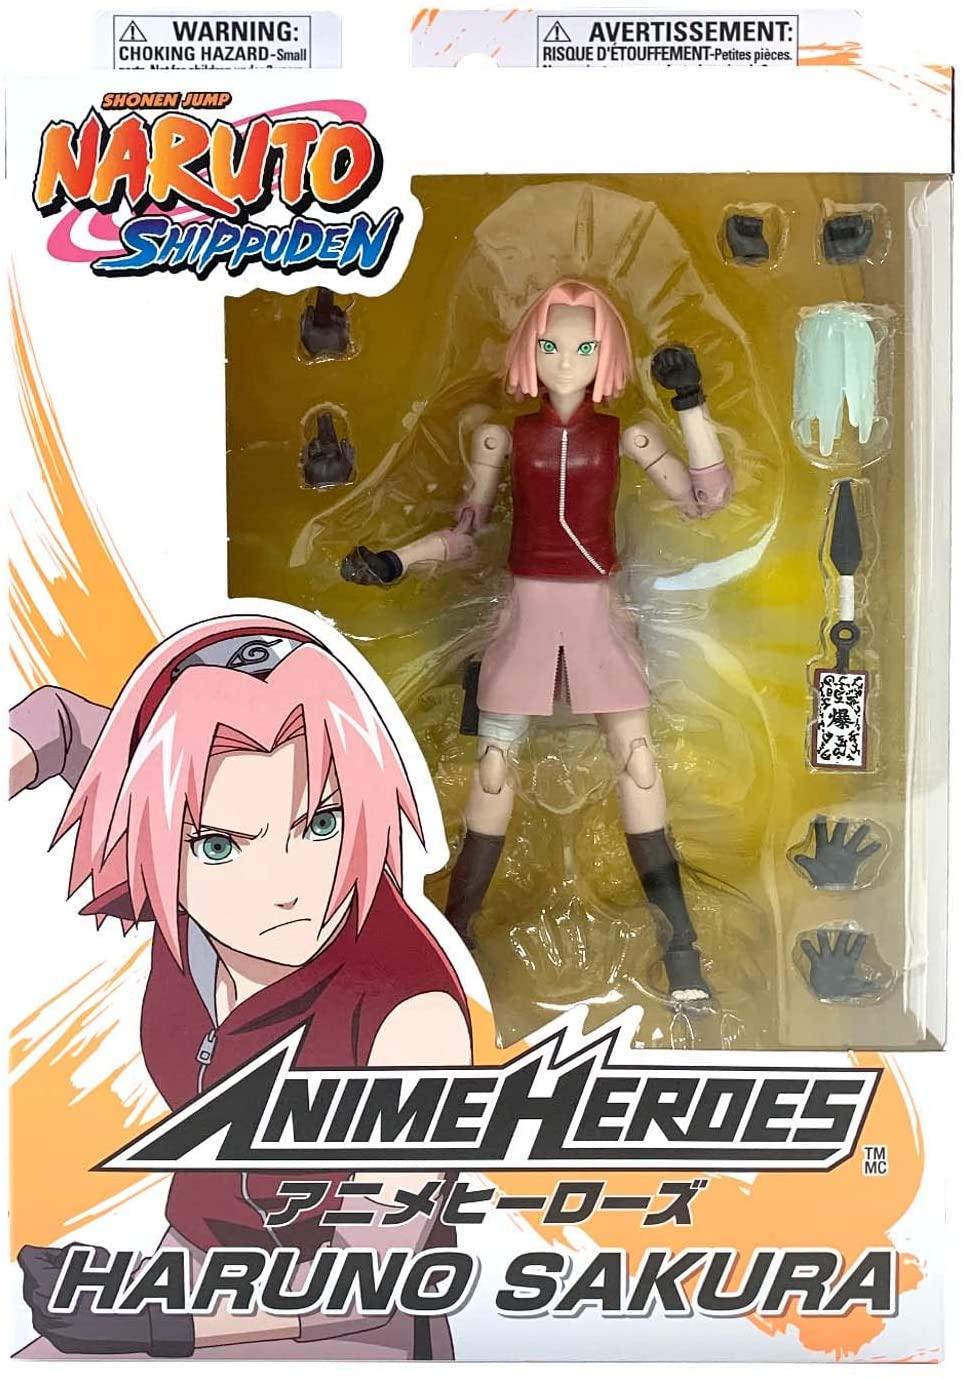 BANDAI Figurine Anime Heroes 17 cm - Sakura Haruno - Naruto